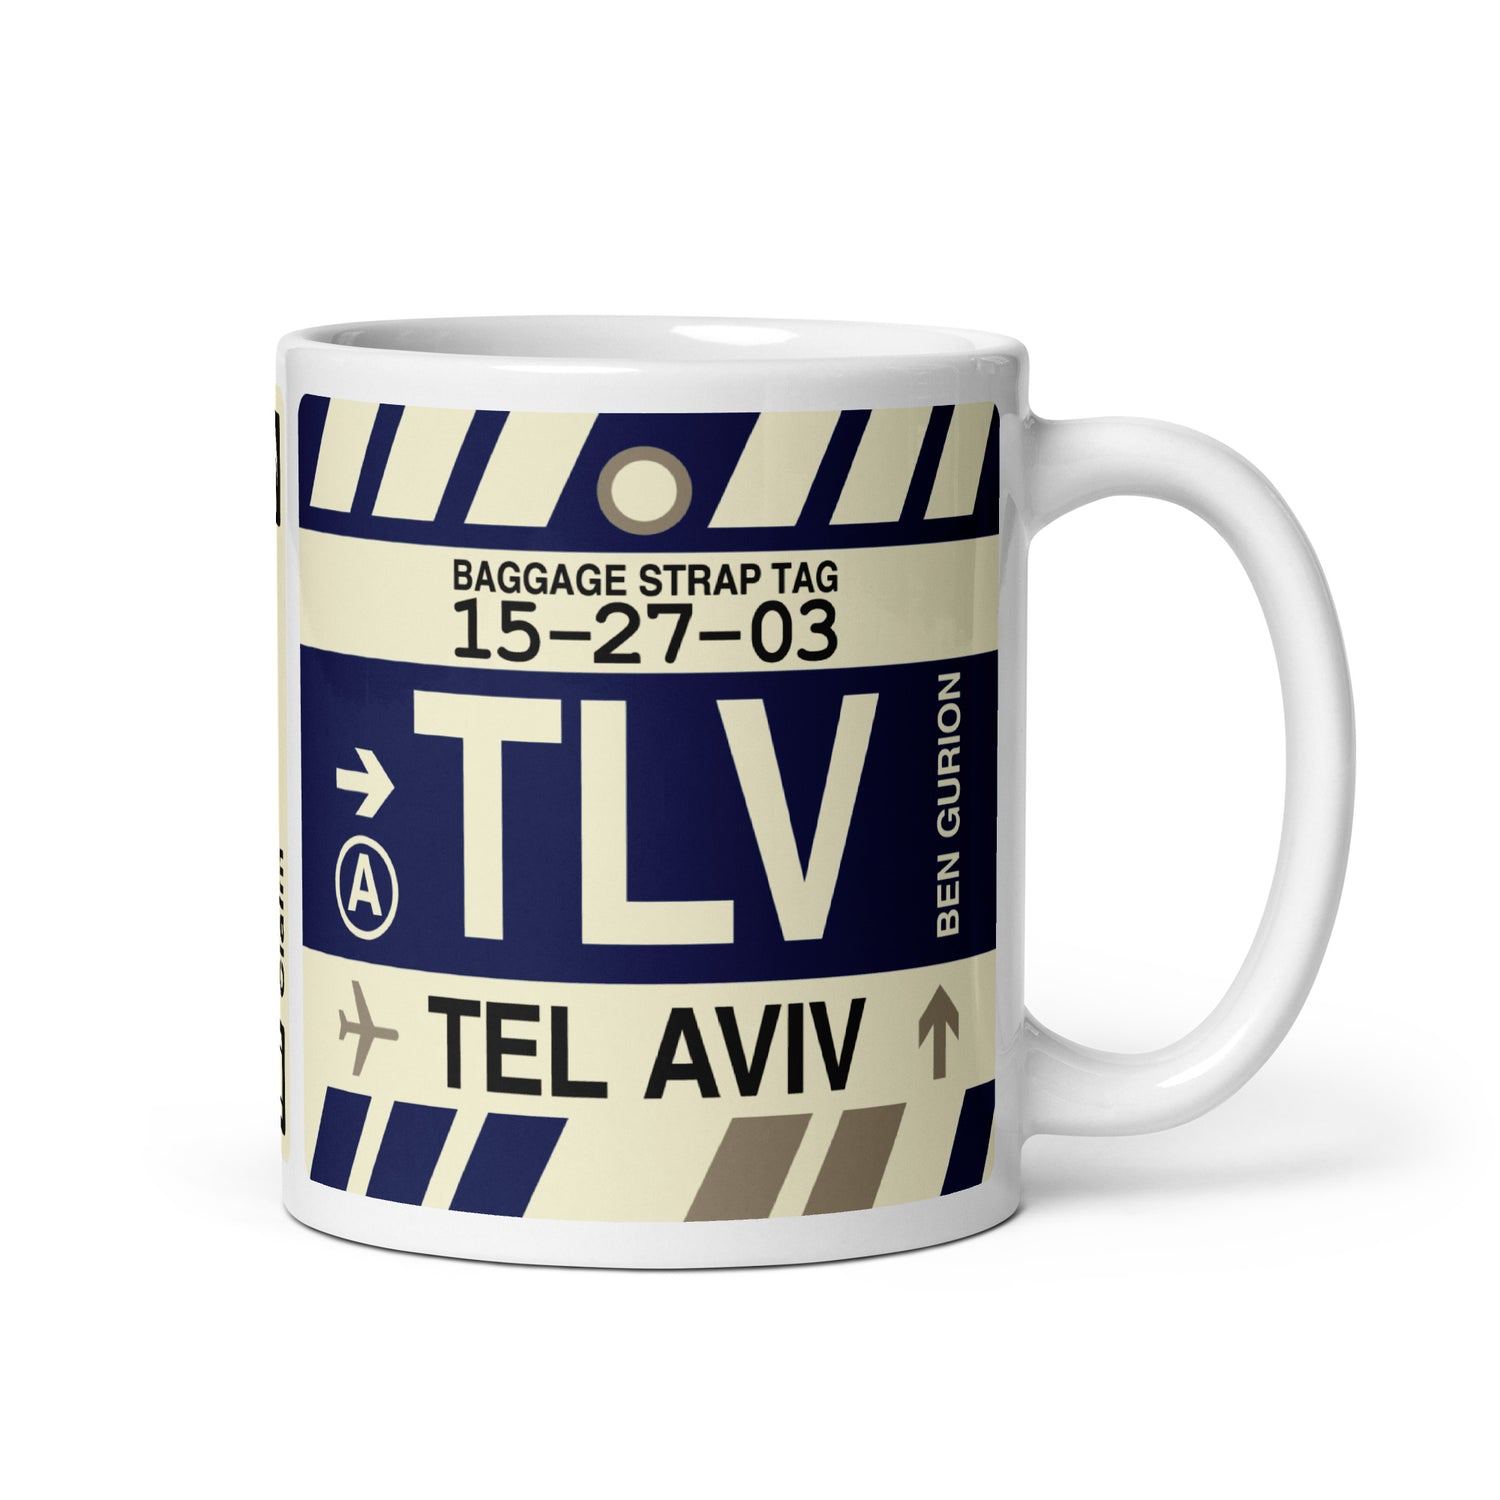 Tel Aviv Israel Coffee Mugs and Water Bottles • TLV Airport Code